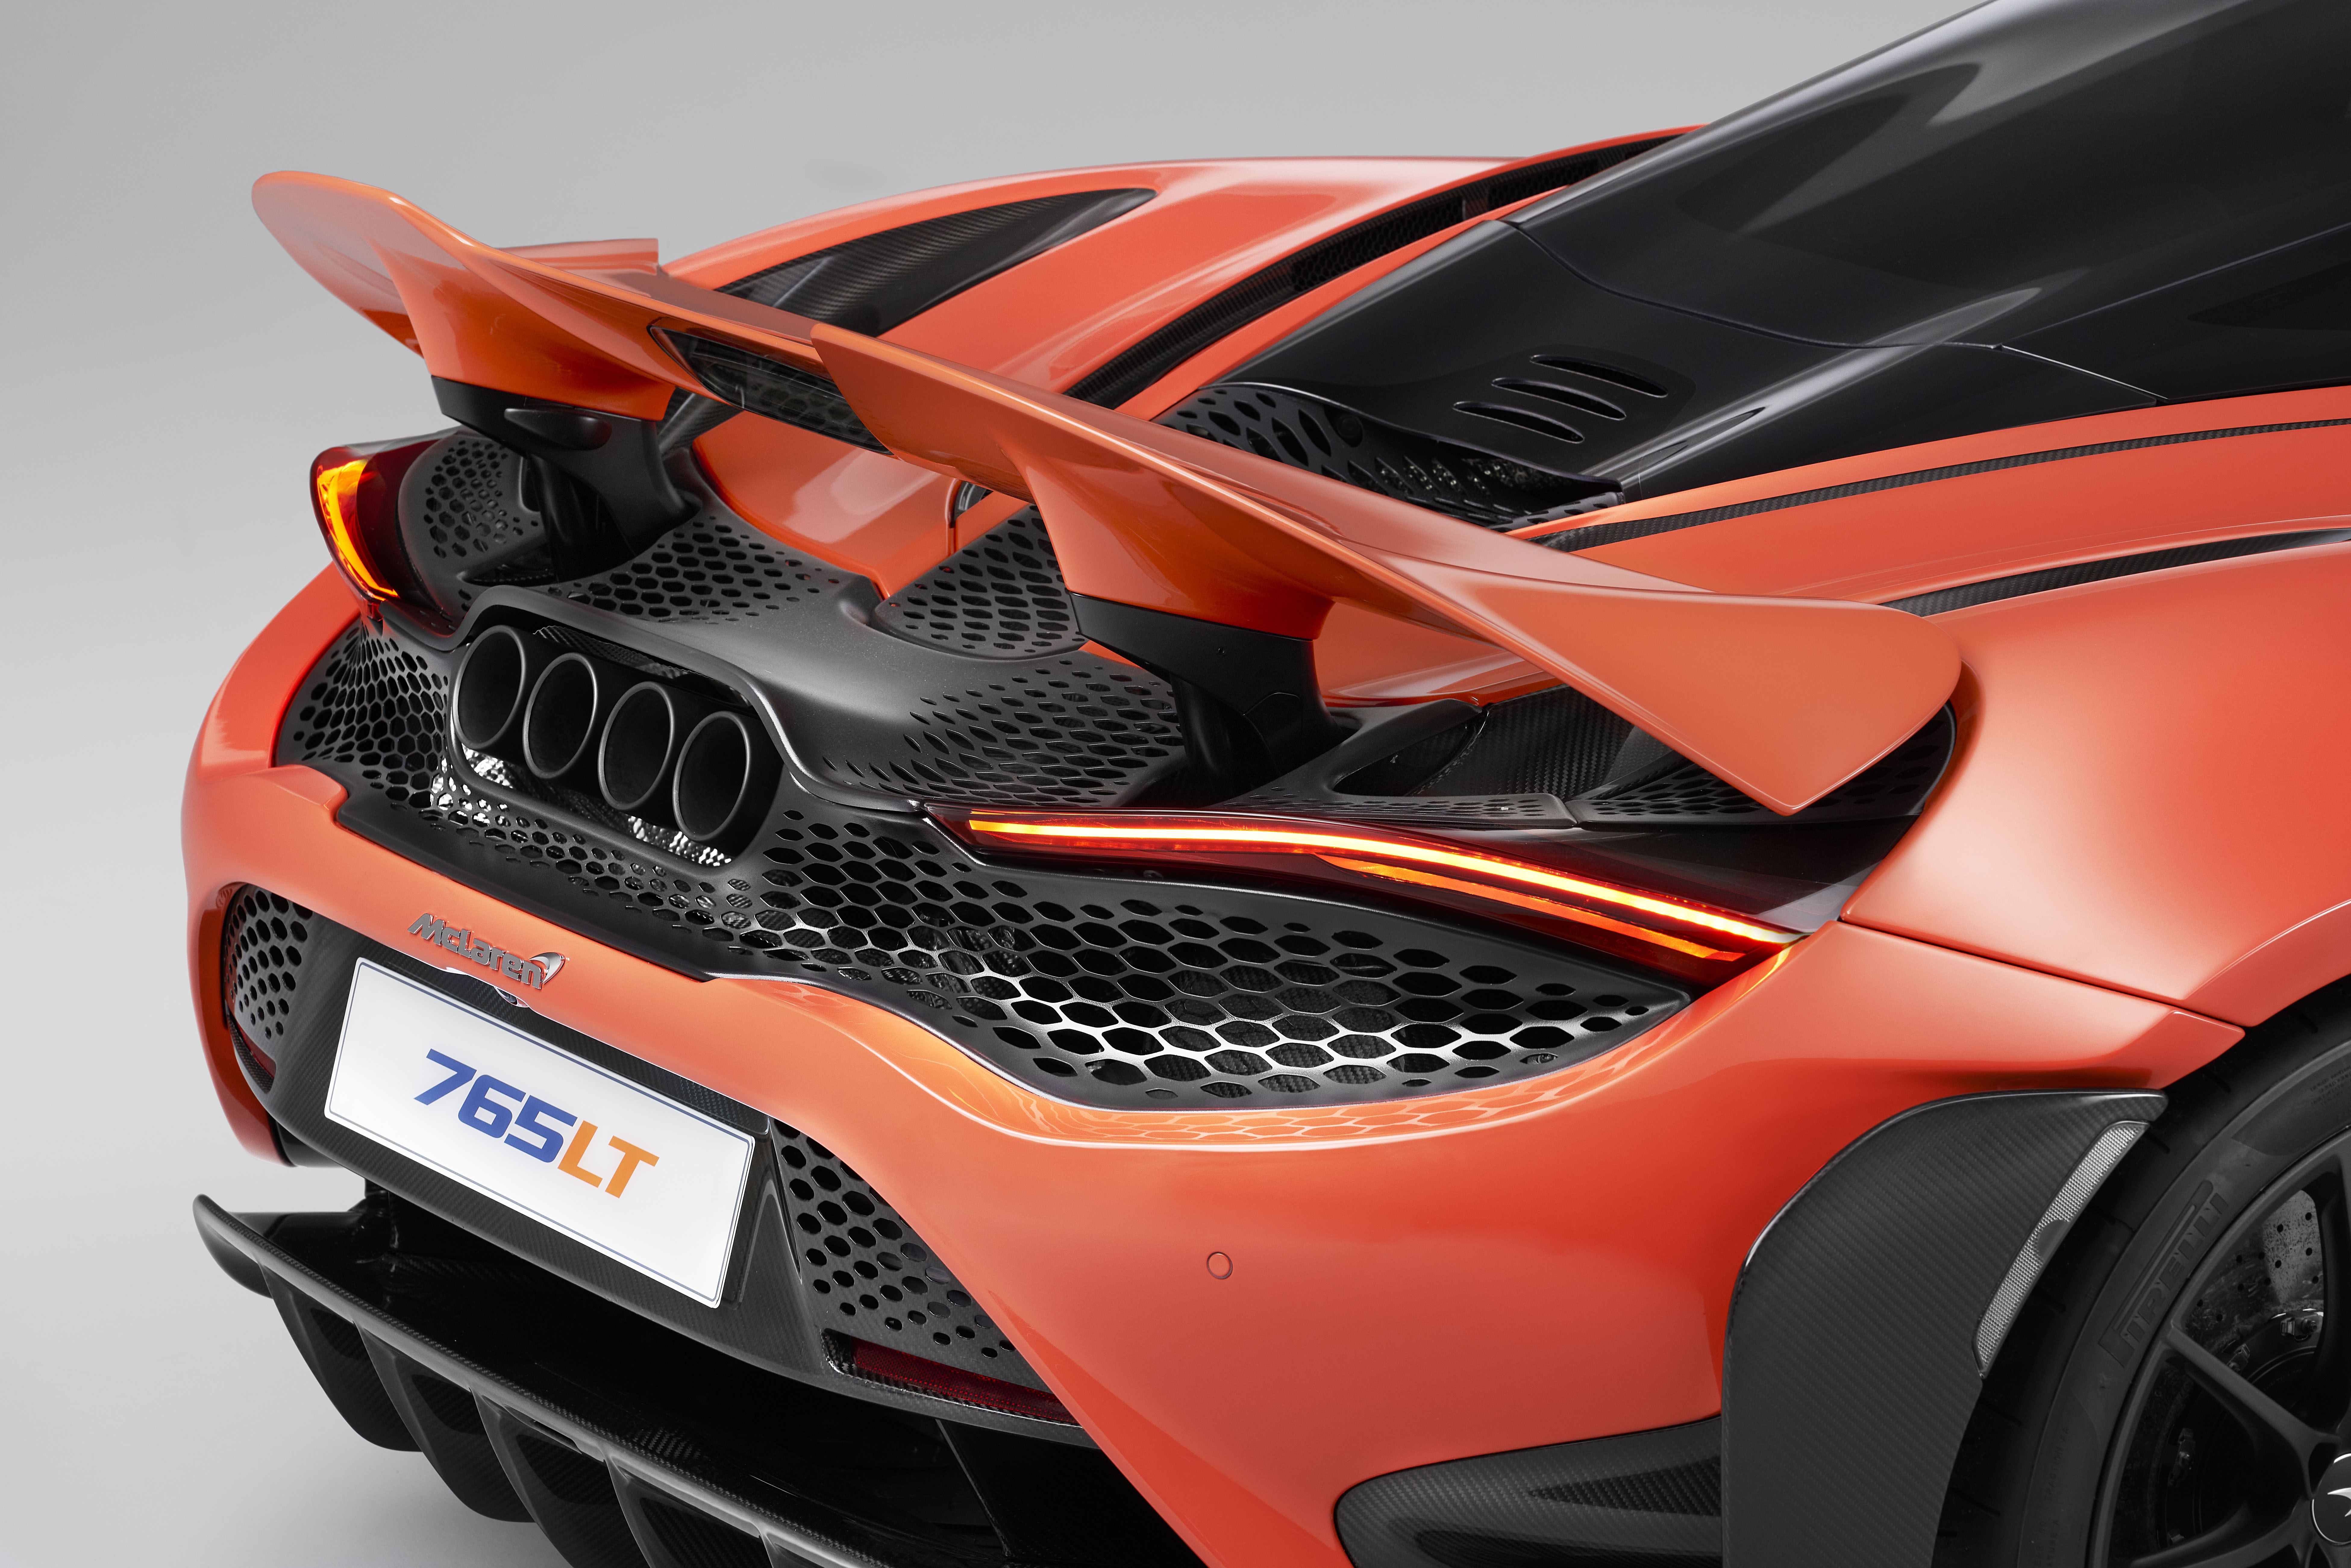 2019 McLaren 765LT